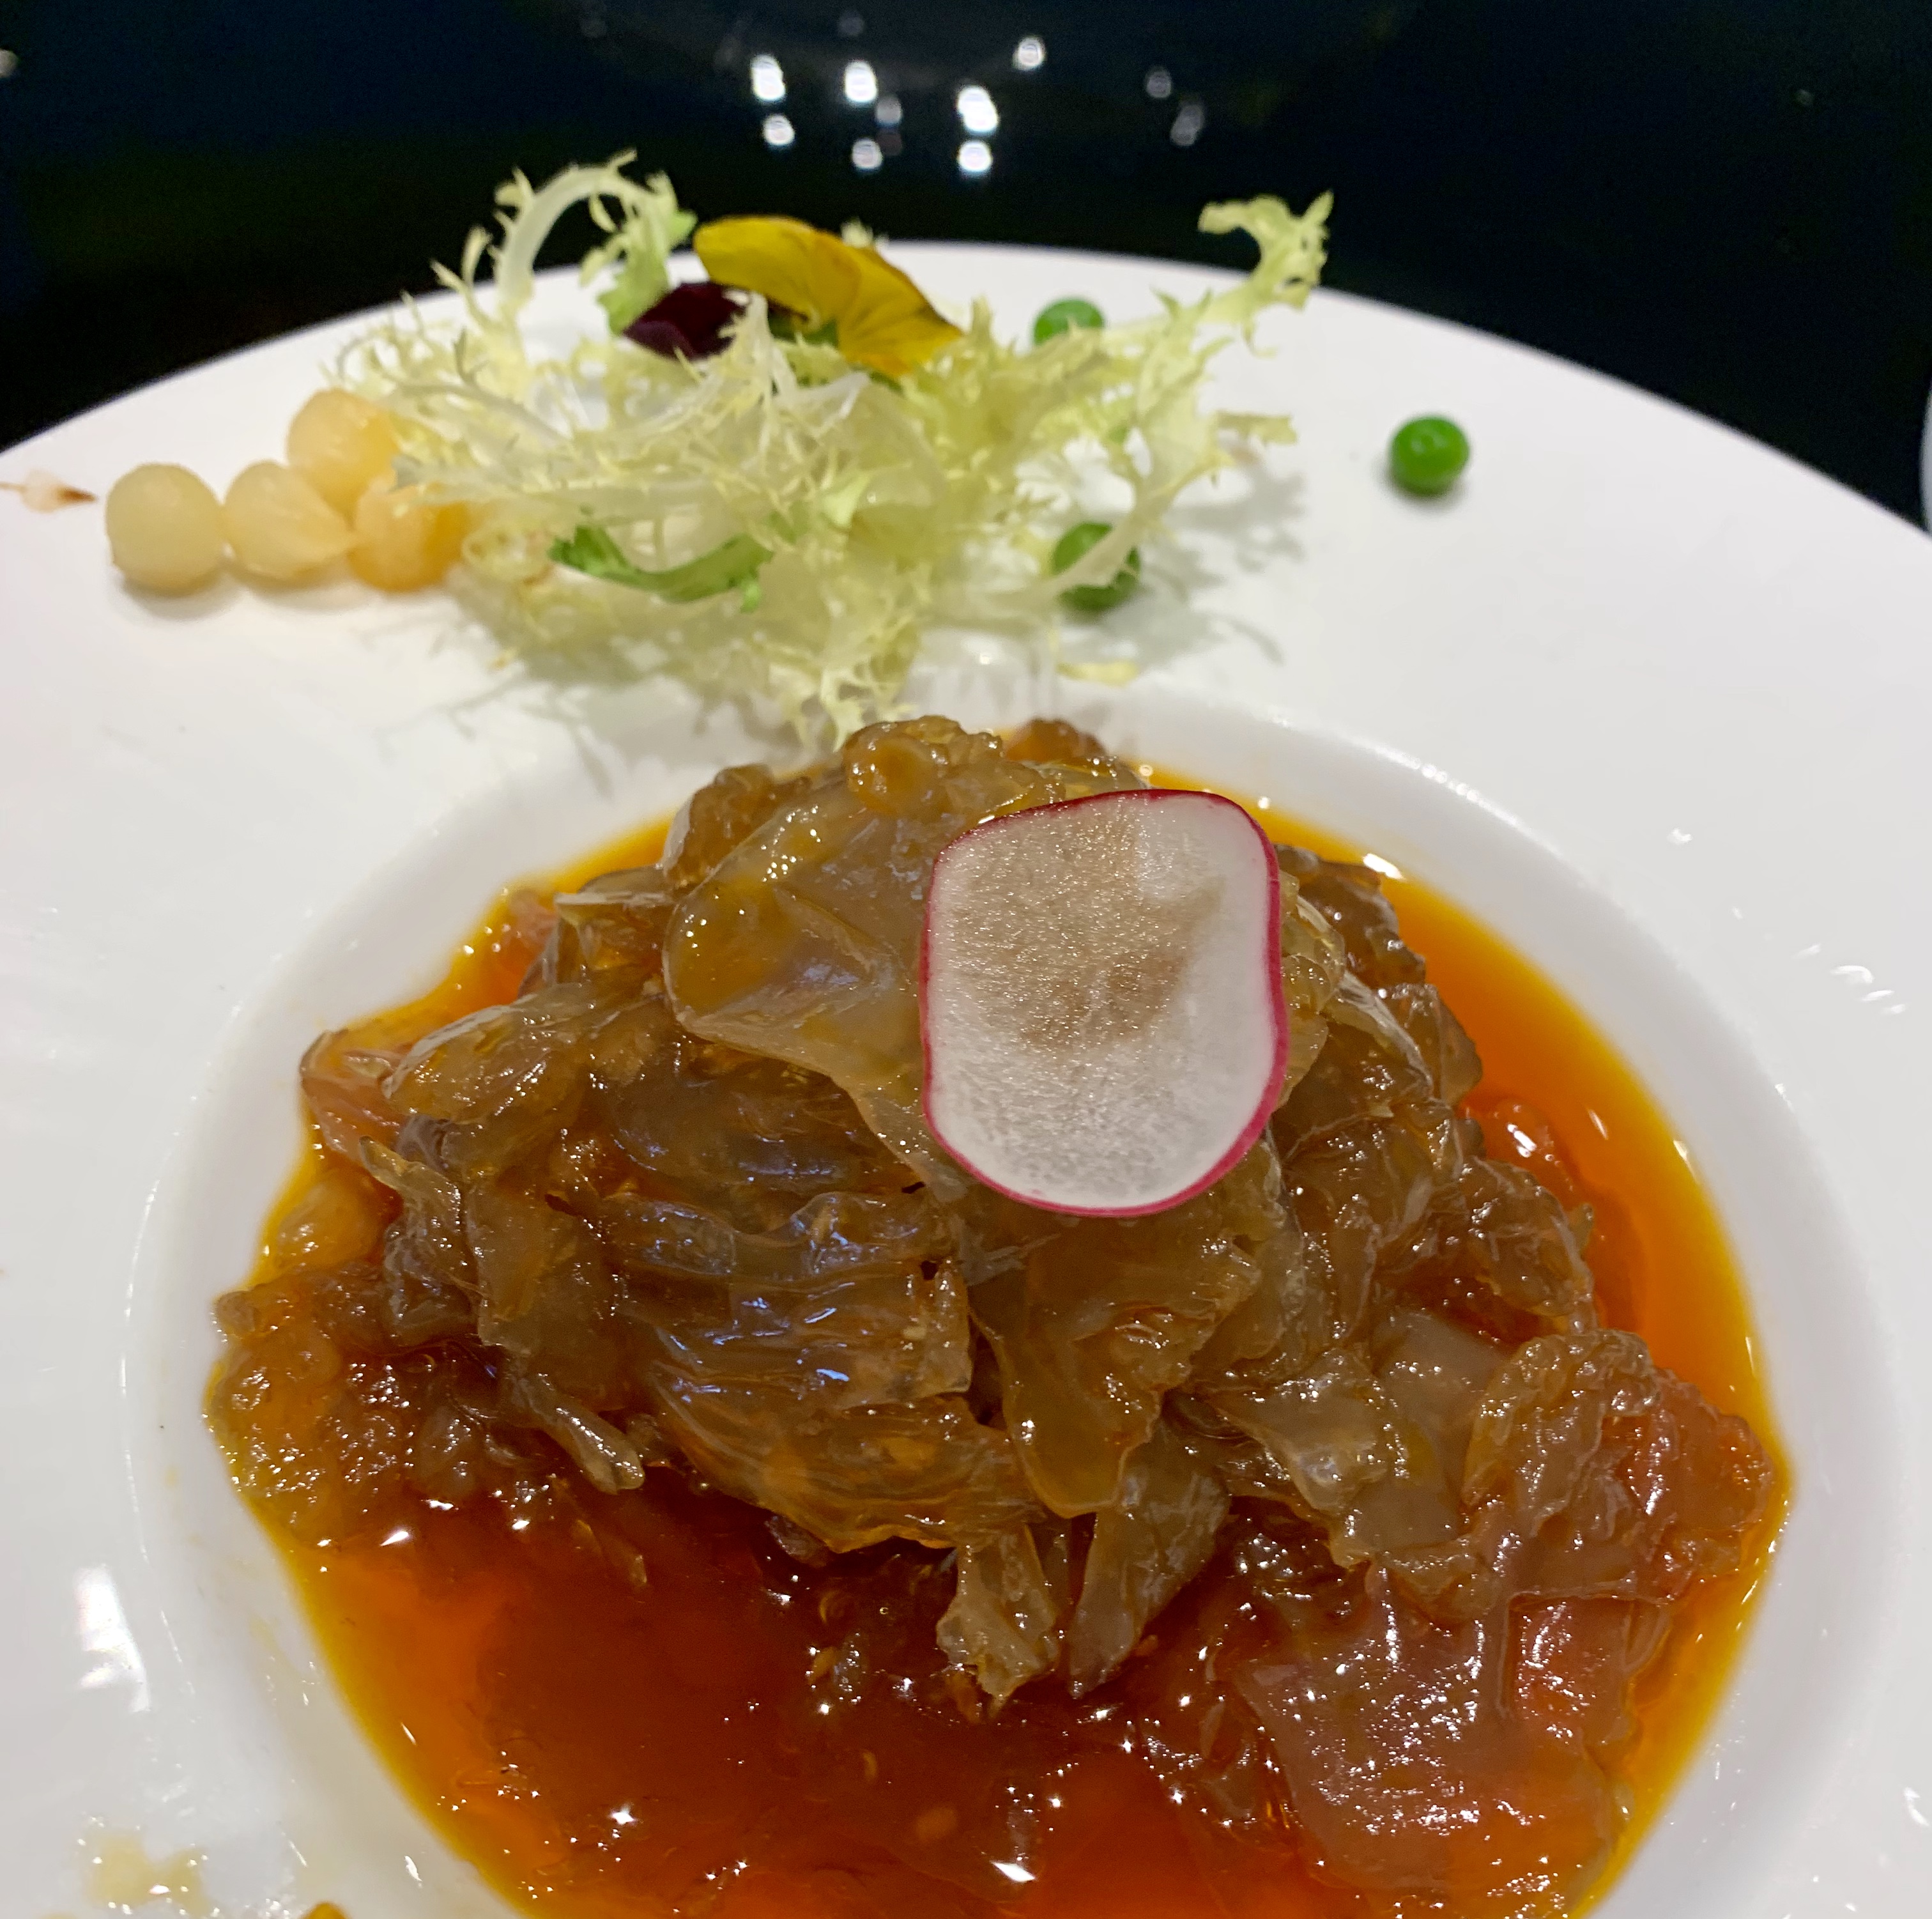 Jellyfish: Hangzhou cuisine